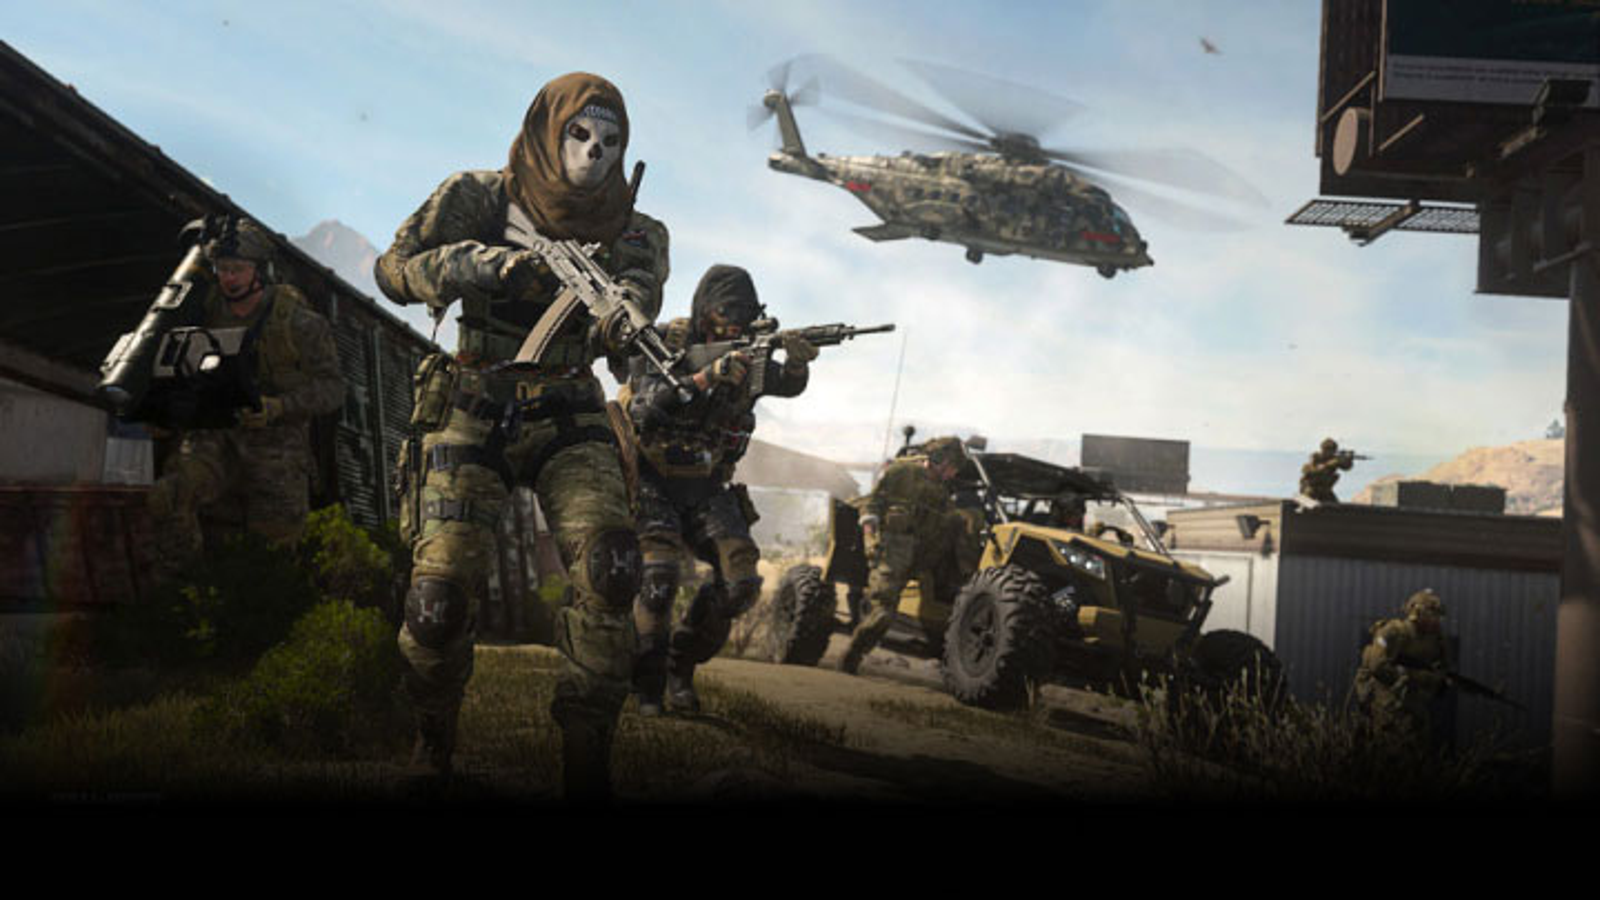 Modern Warfare 2019; A huge success (?)